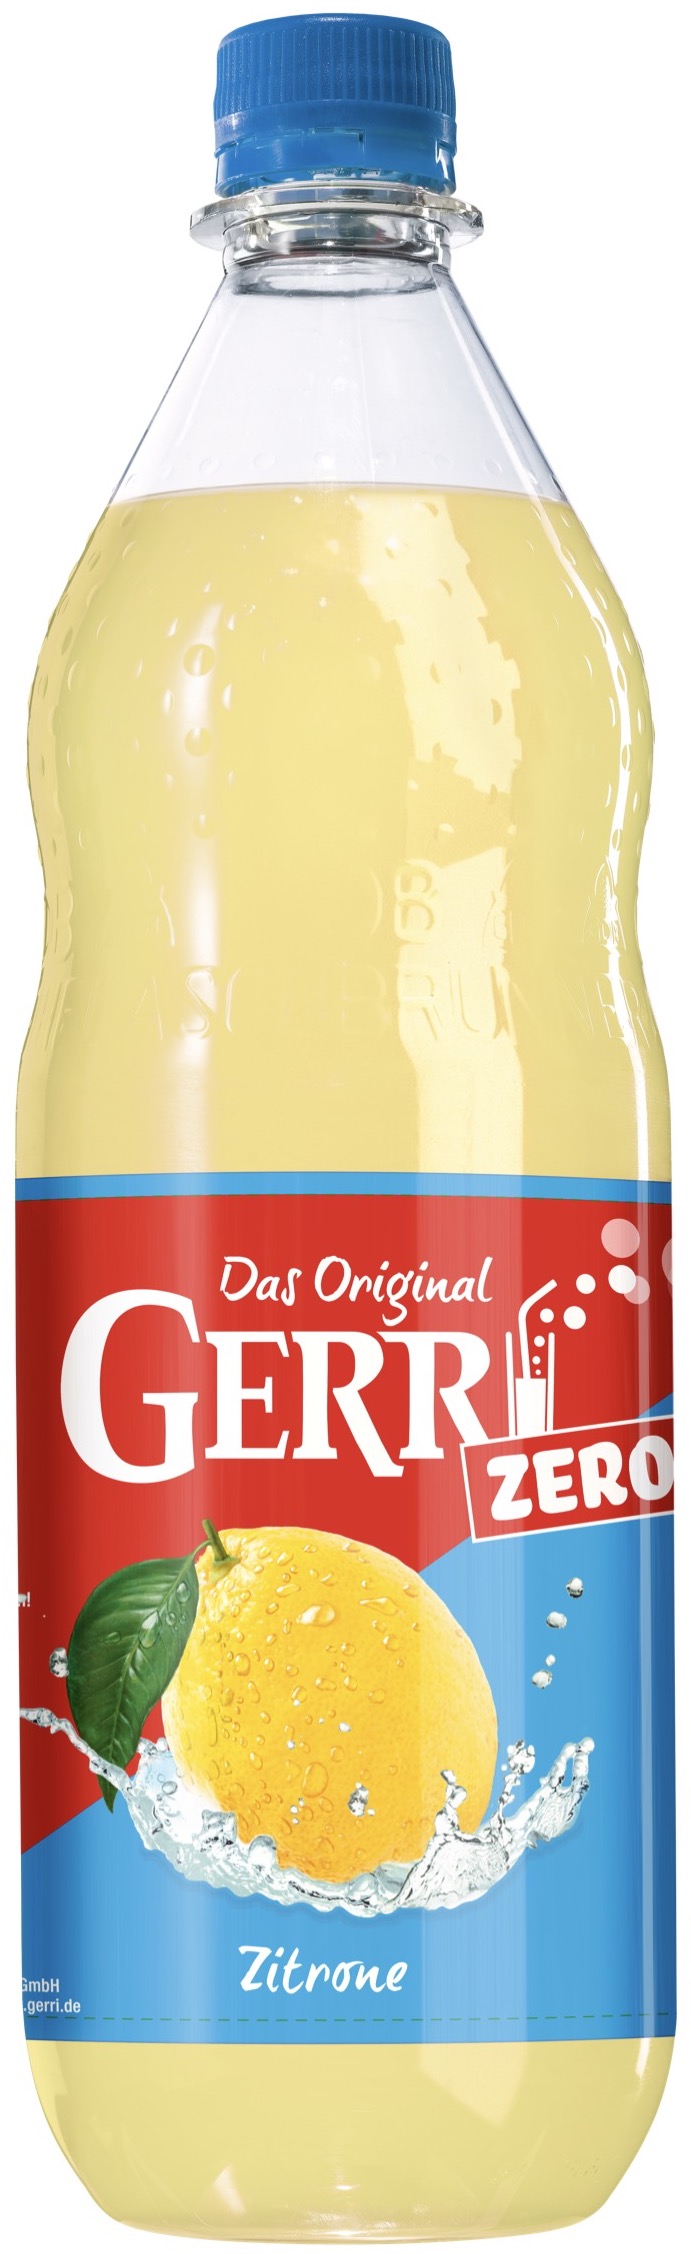 Gerri Zero Zitrone 1,0L MEHRWEG